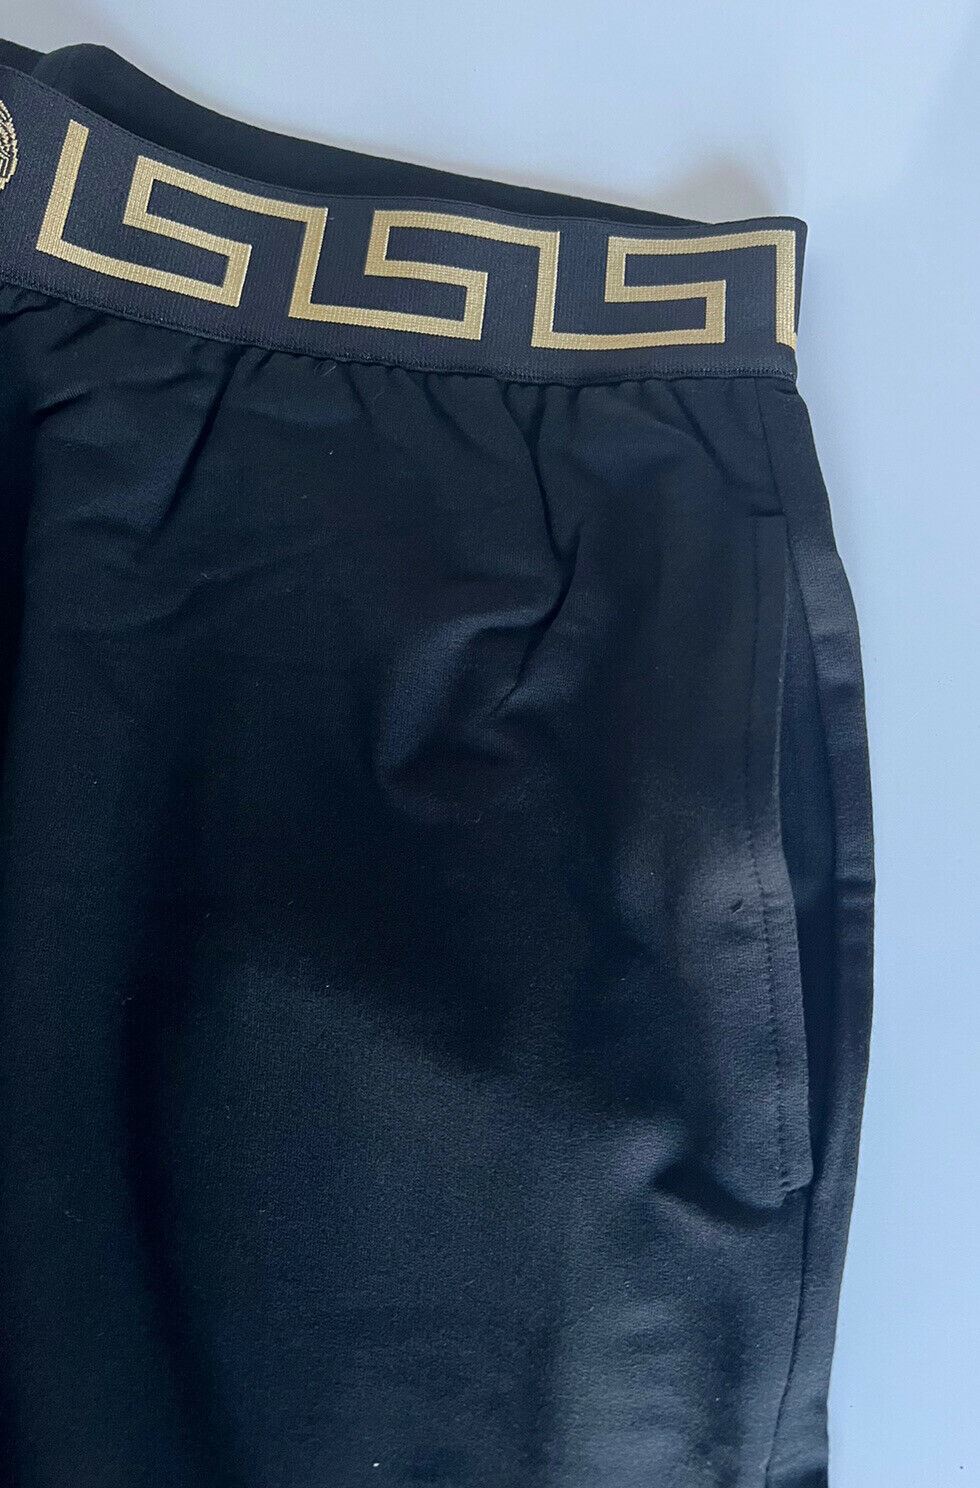 Мужские спортивные брюки NWT Versace черные с каймой Medusa Greca 7 (XL) Италия 15011 